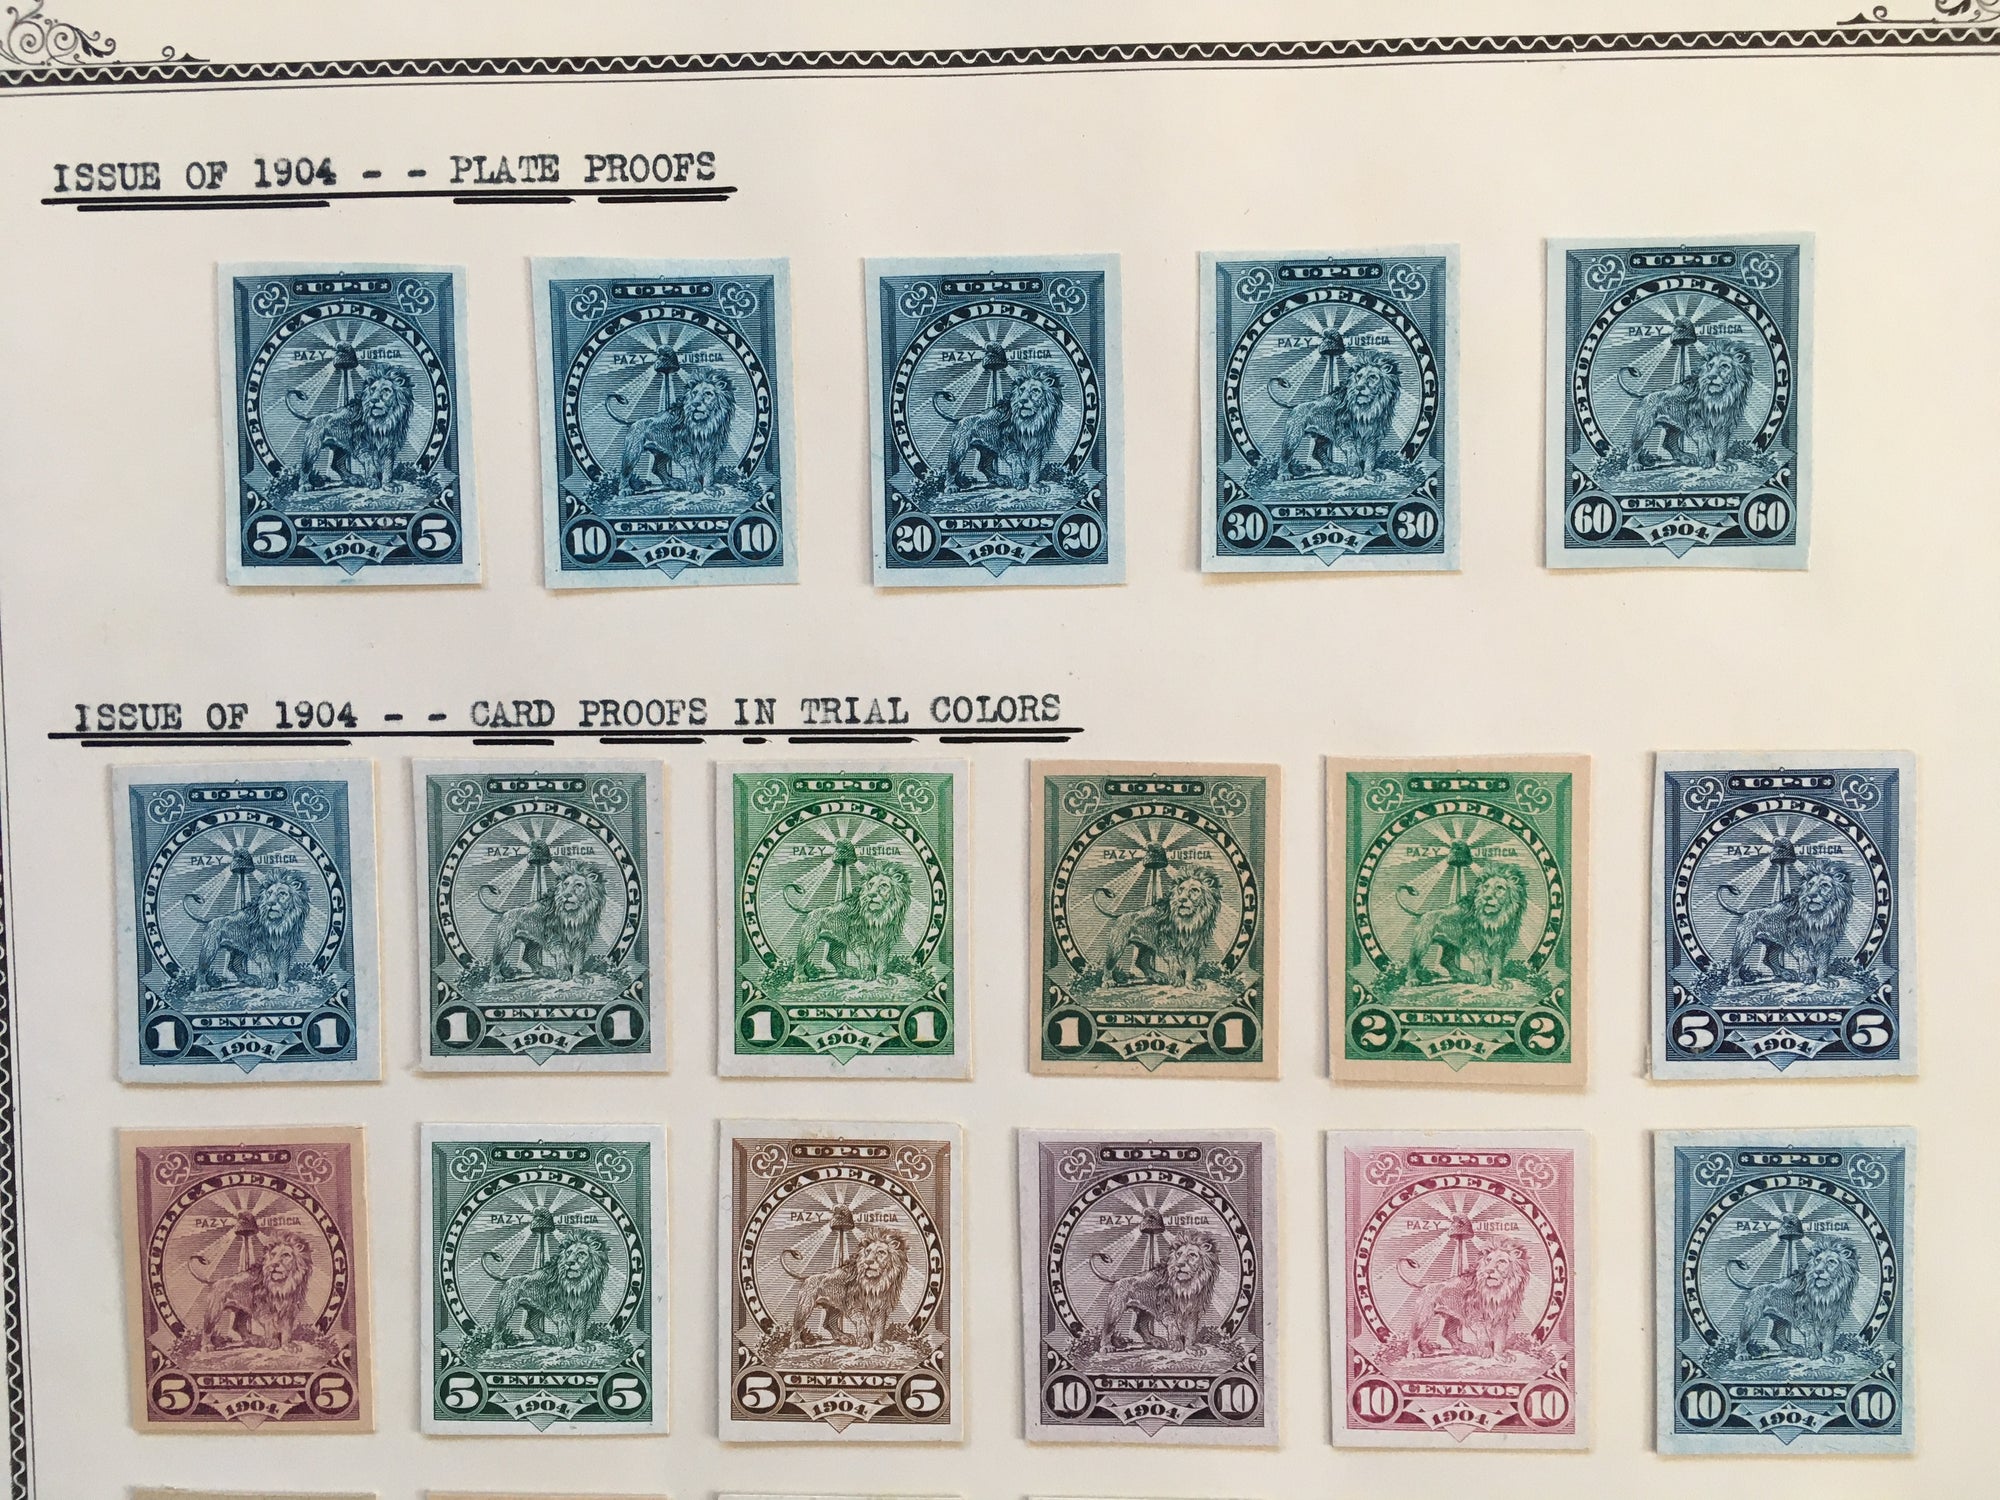 Paraguay 1905-10 Sentinel Lion Plate Proof Color Trials x 31. Scott 91-111 var